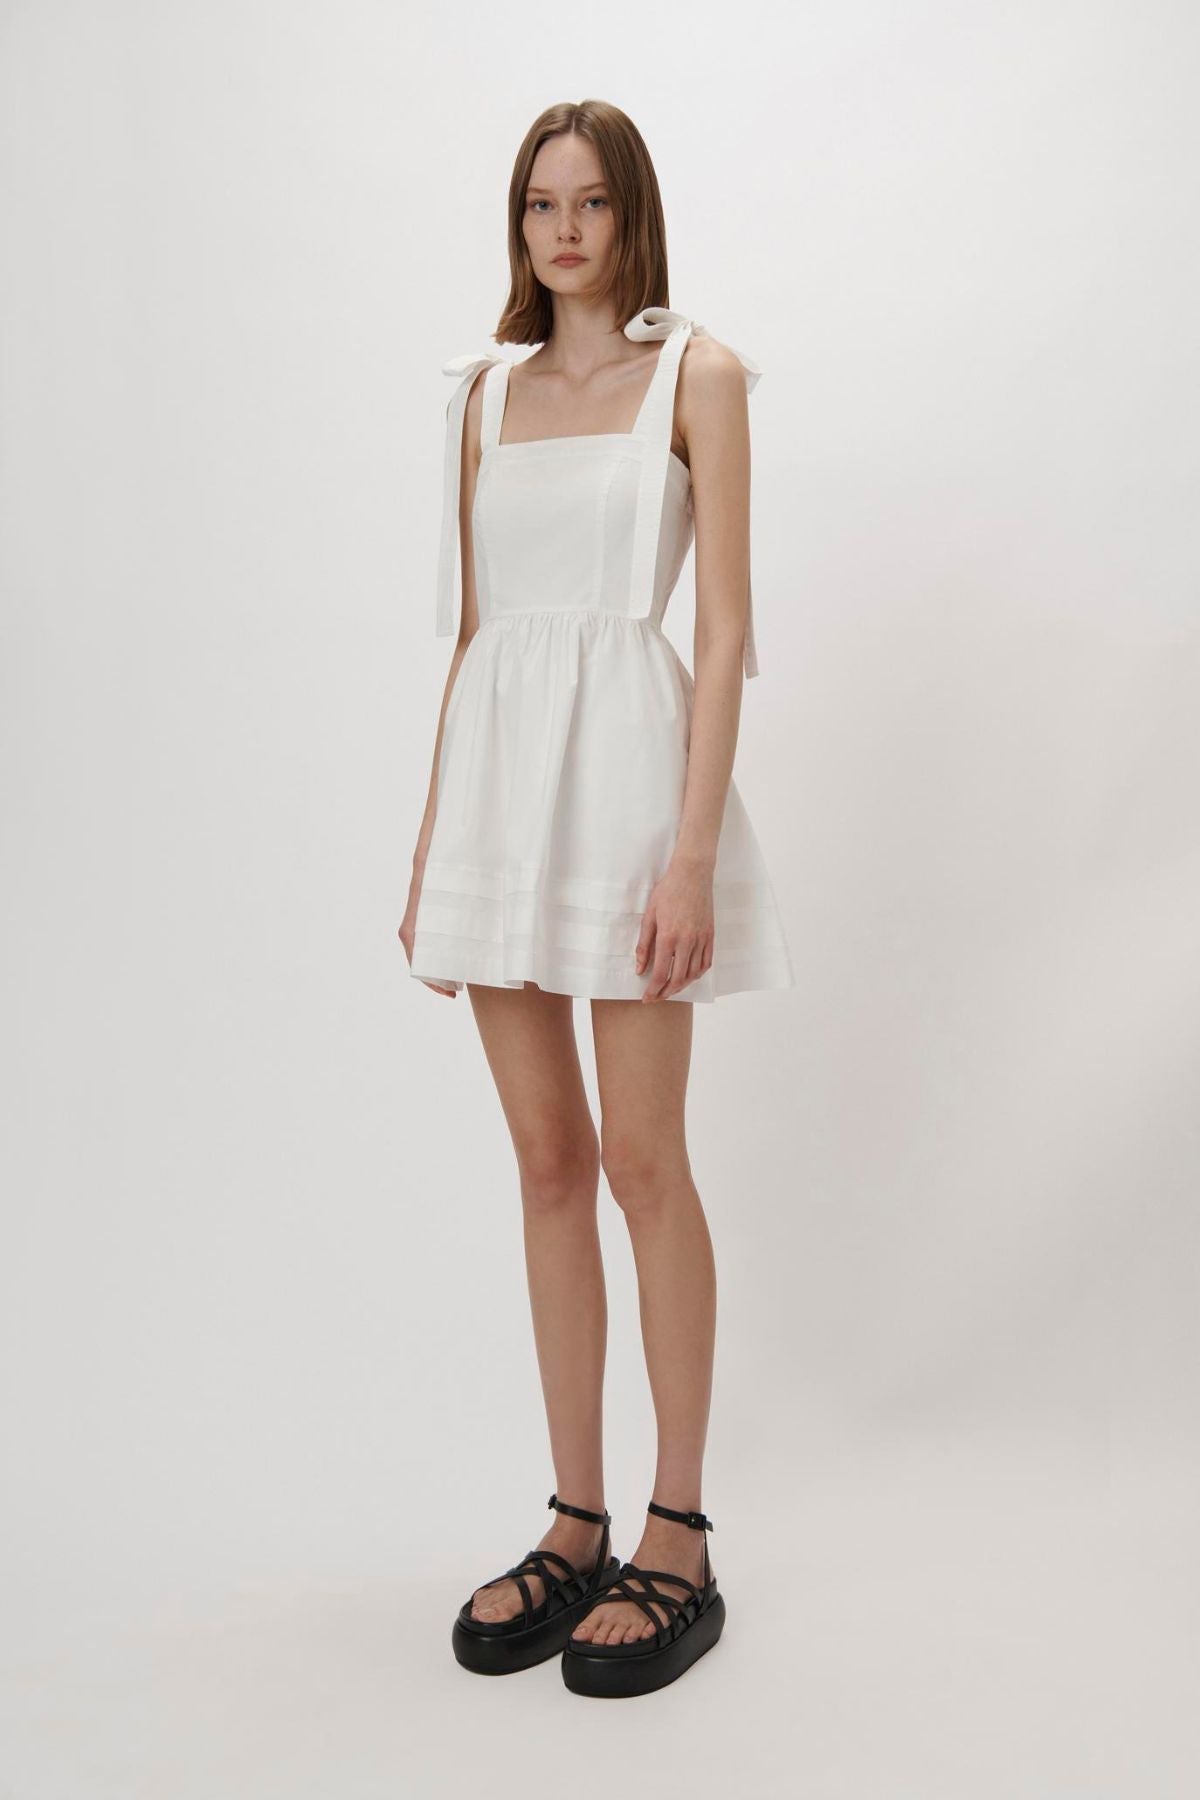 Simkhai Kammy Cotton Poplin Mini Dress - White